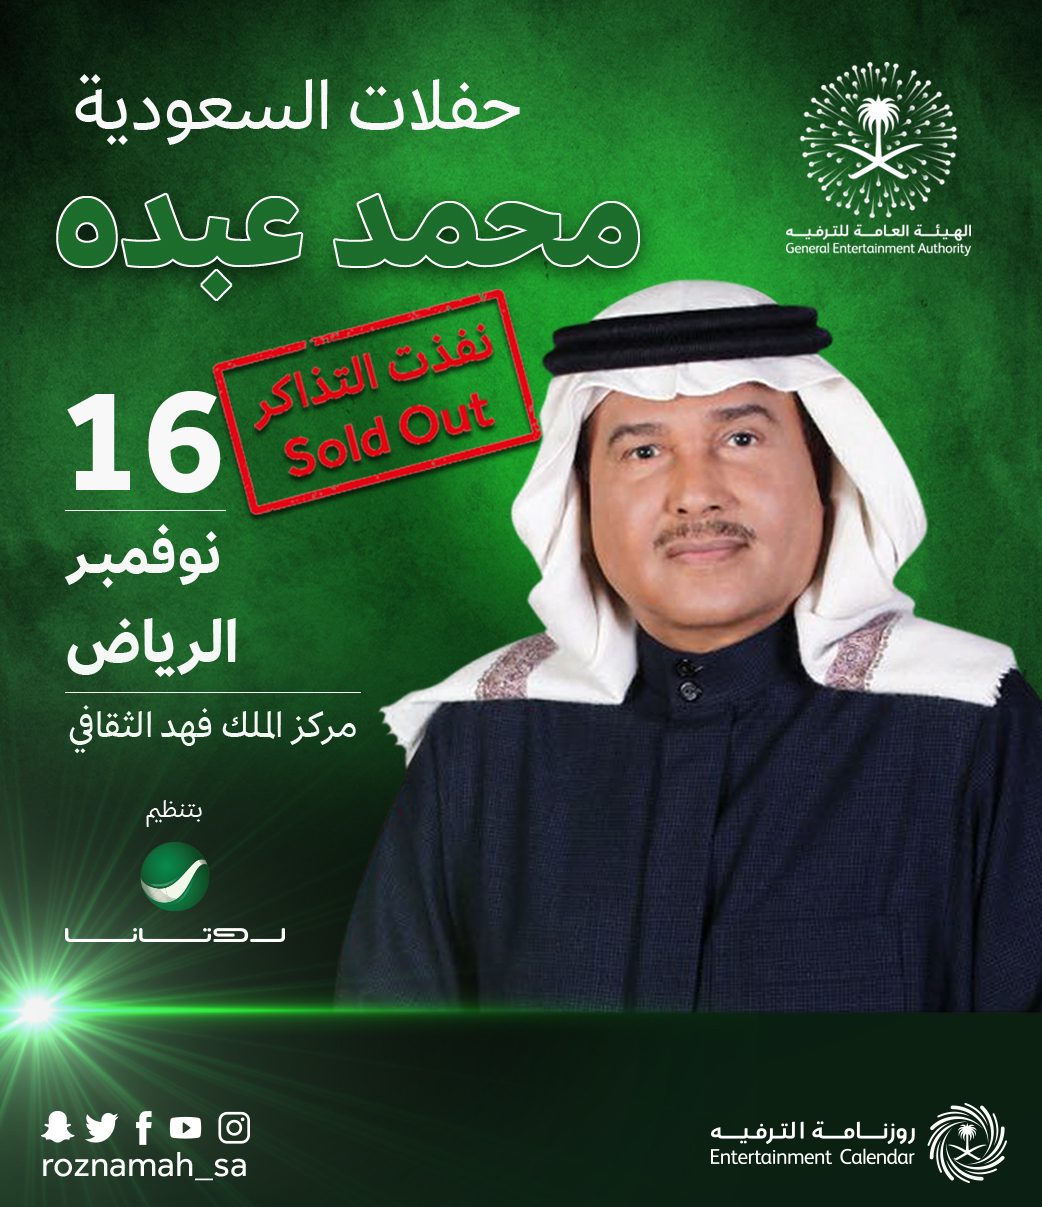 الترفيه: نفاد تذاكر حفل محمد عبده في الرياض